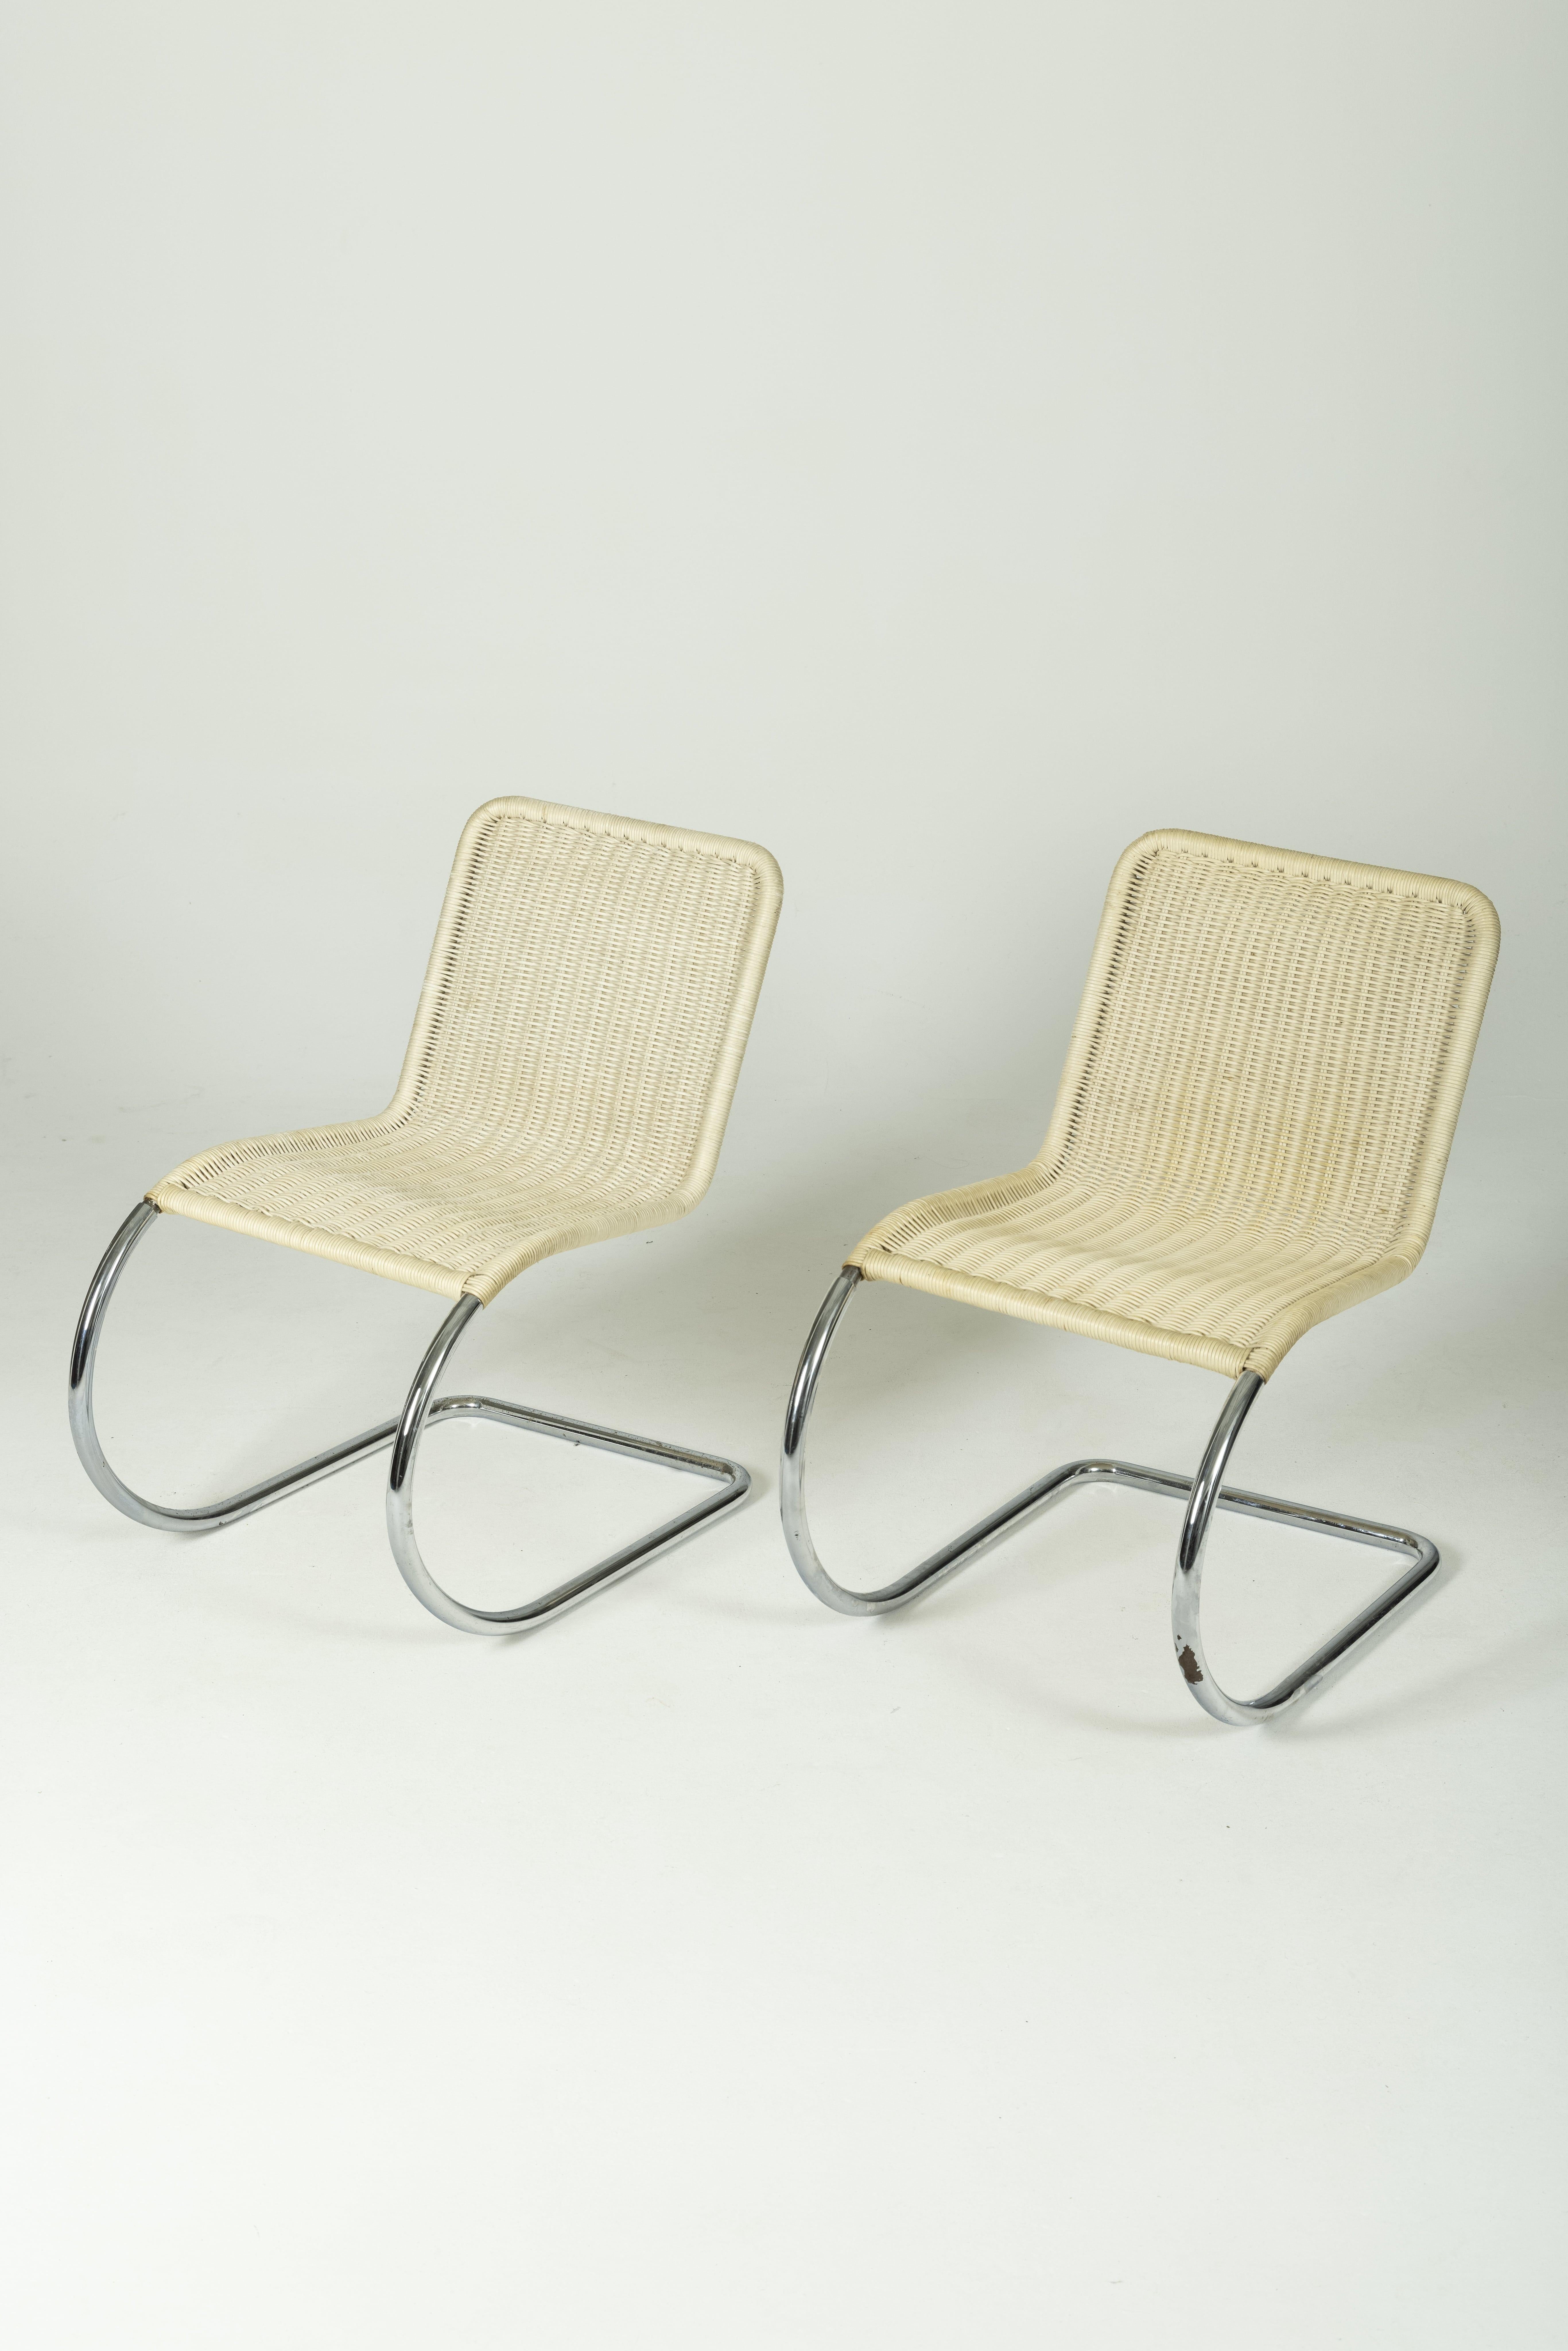 Chaise MR10 du designer Ludwig Mies Van der Rohe, datant des années 1930. Structure flexible en porte-à-faux, tube en acier chromé et assise en cannage beige. Légers signes d'usure. Deux chaises disponibles.
LP875-876